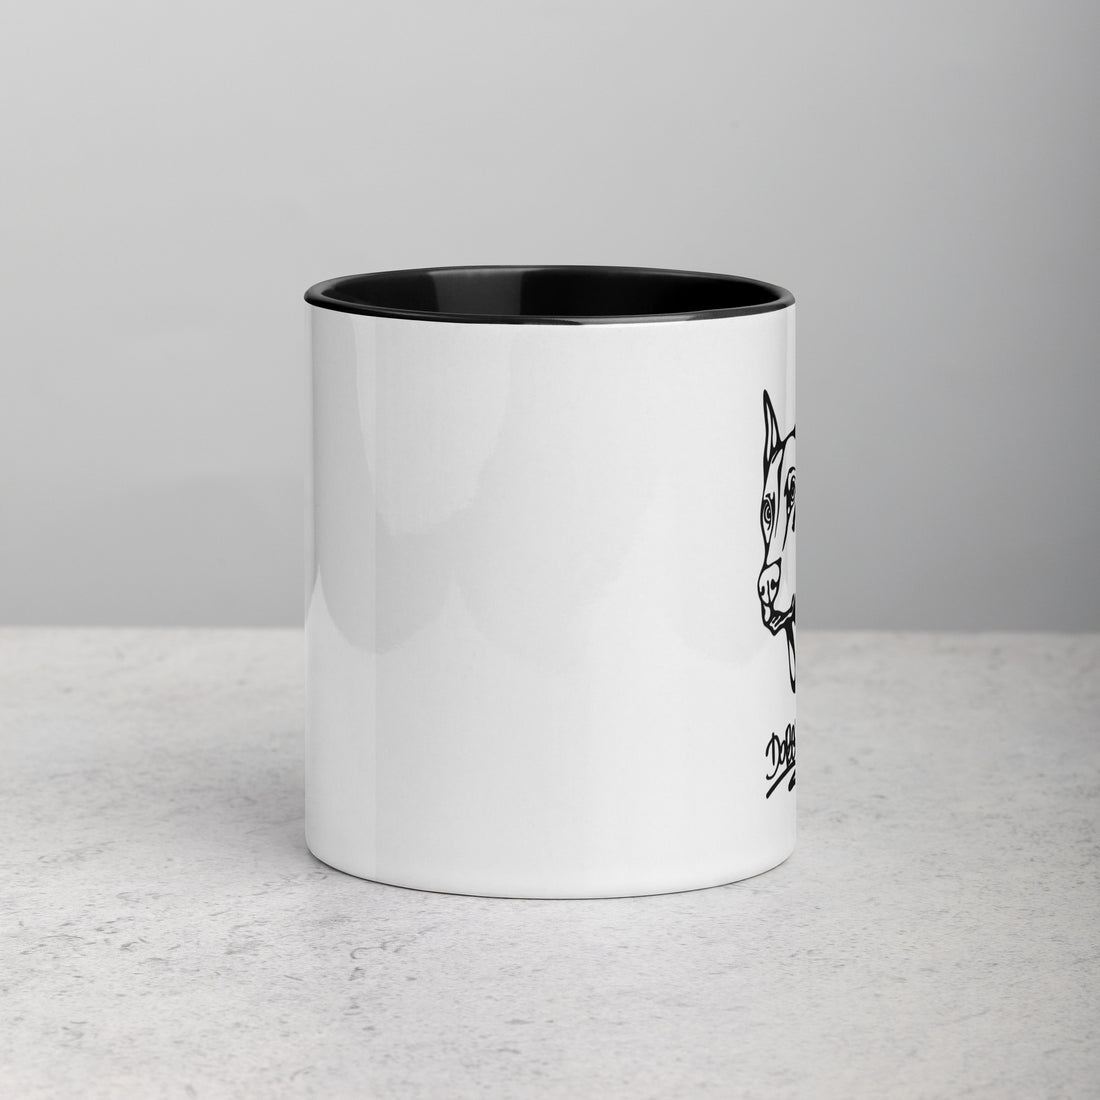 Mug with Color Inside Doberman